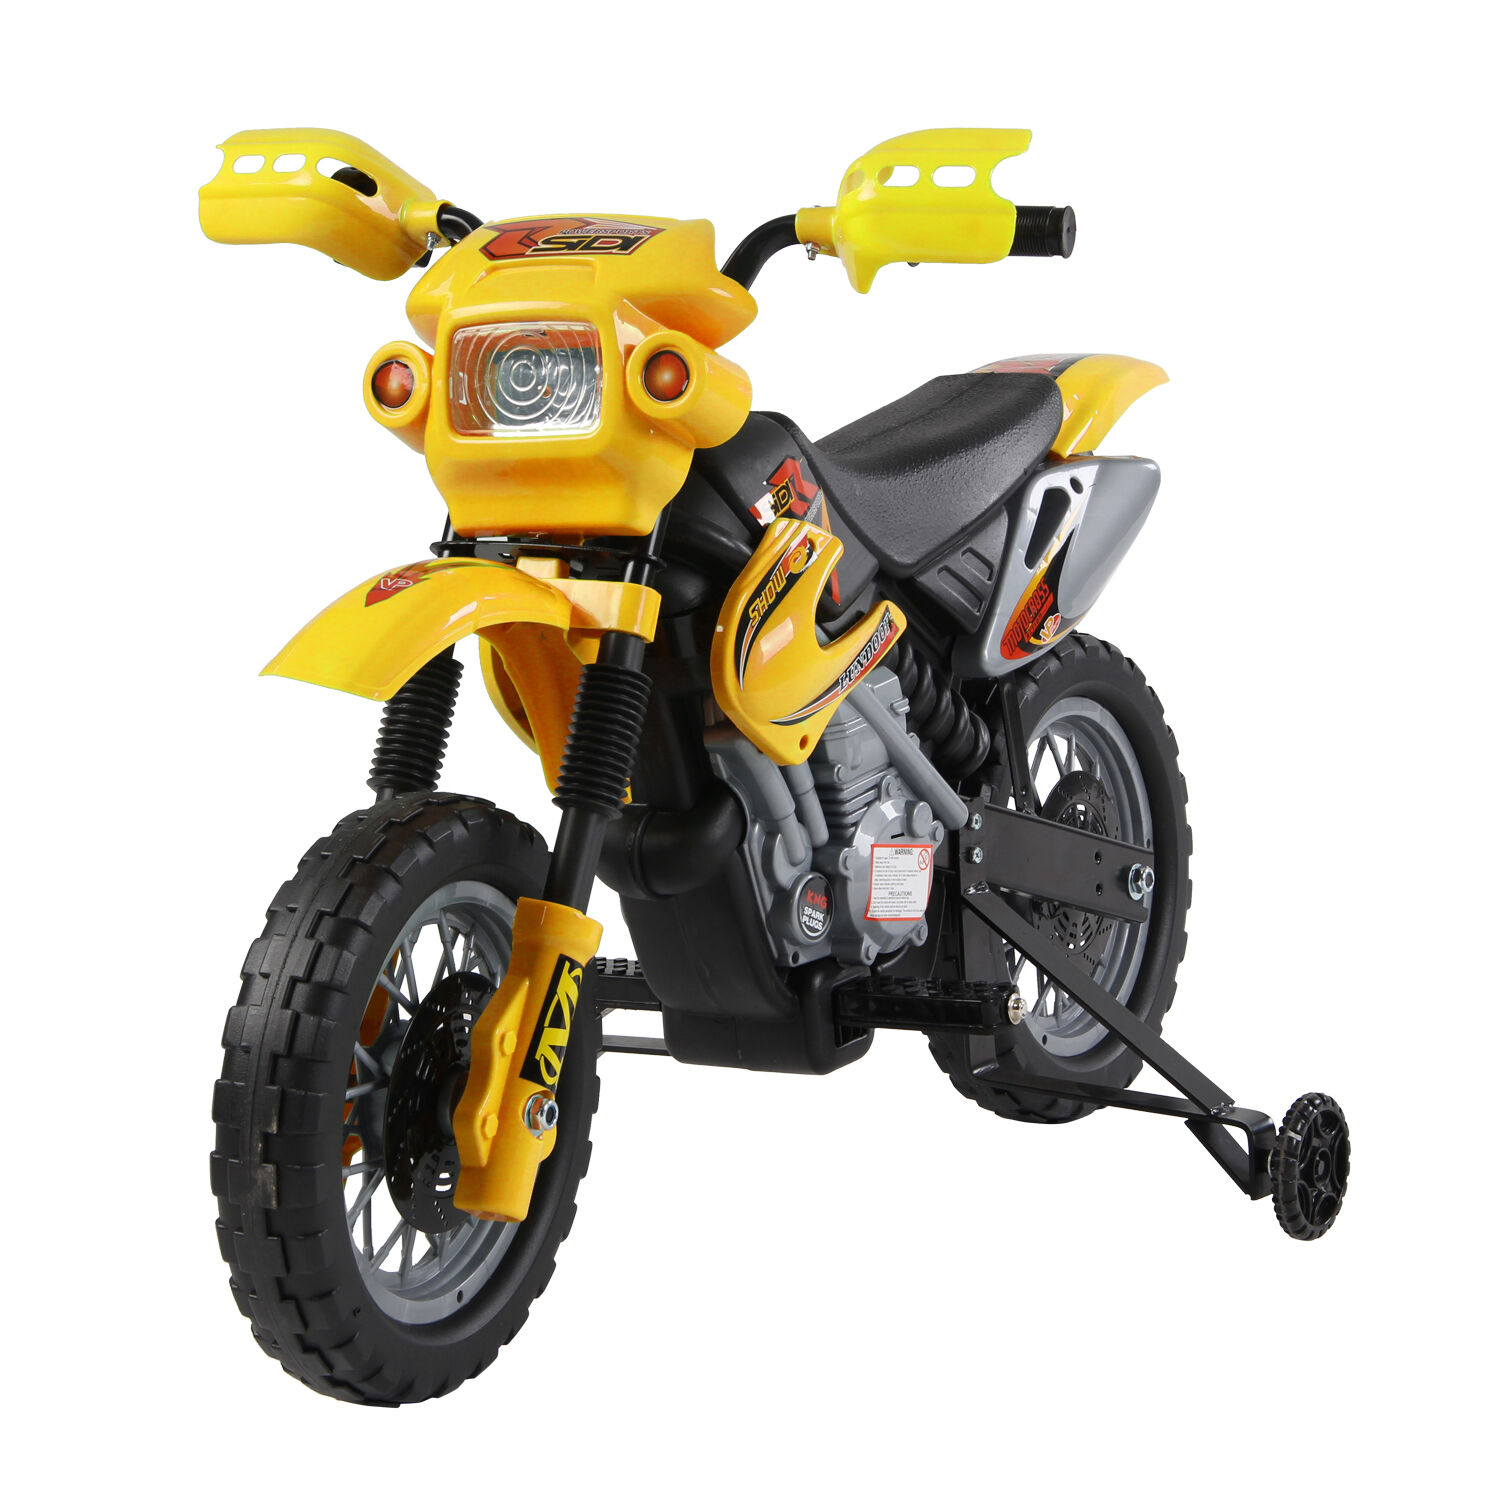 HOMCOM Moto Cross électrique enfant 3 à 6 ans 6 V phares klaxon musiques 102 x 53 x 66 cm jaune et noir